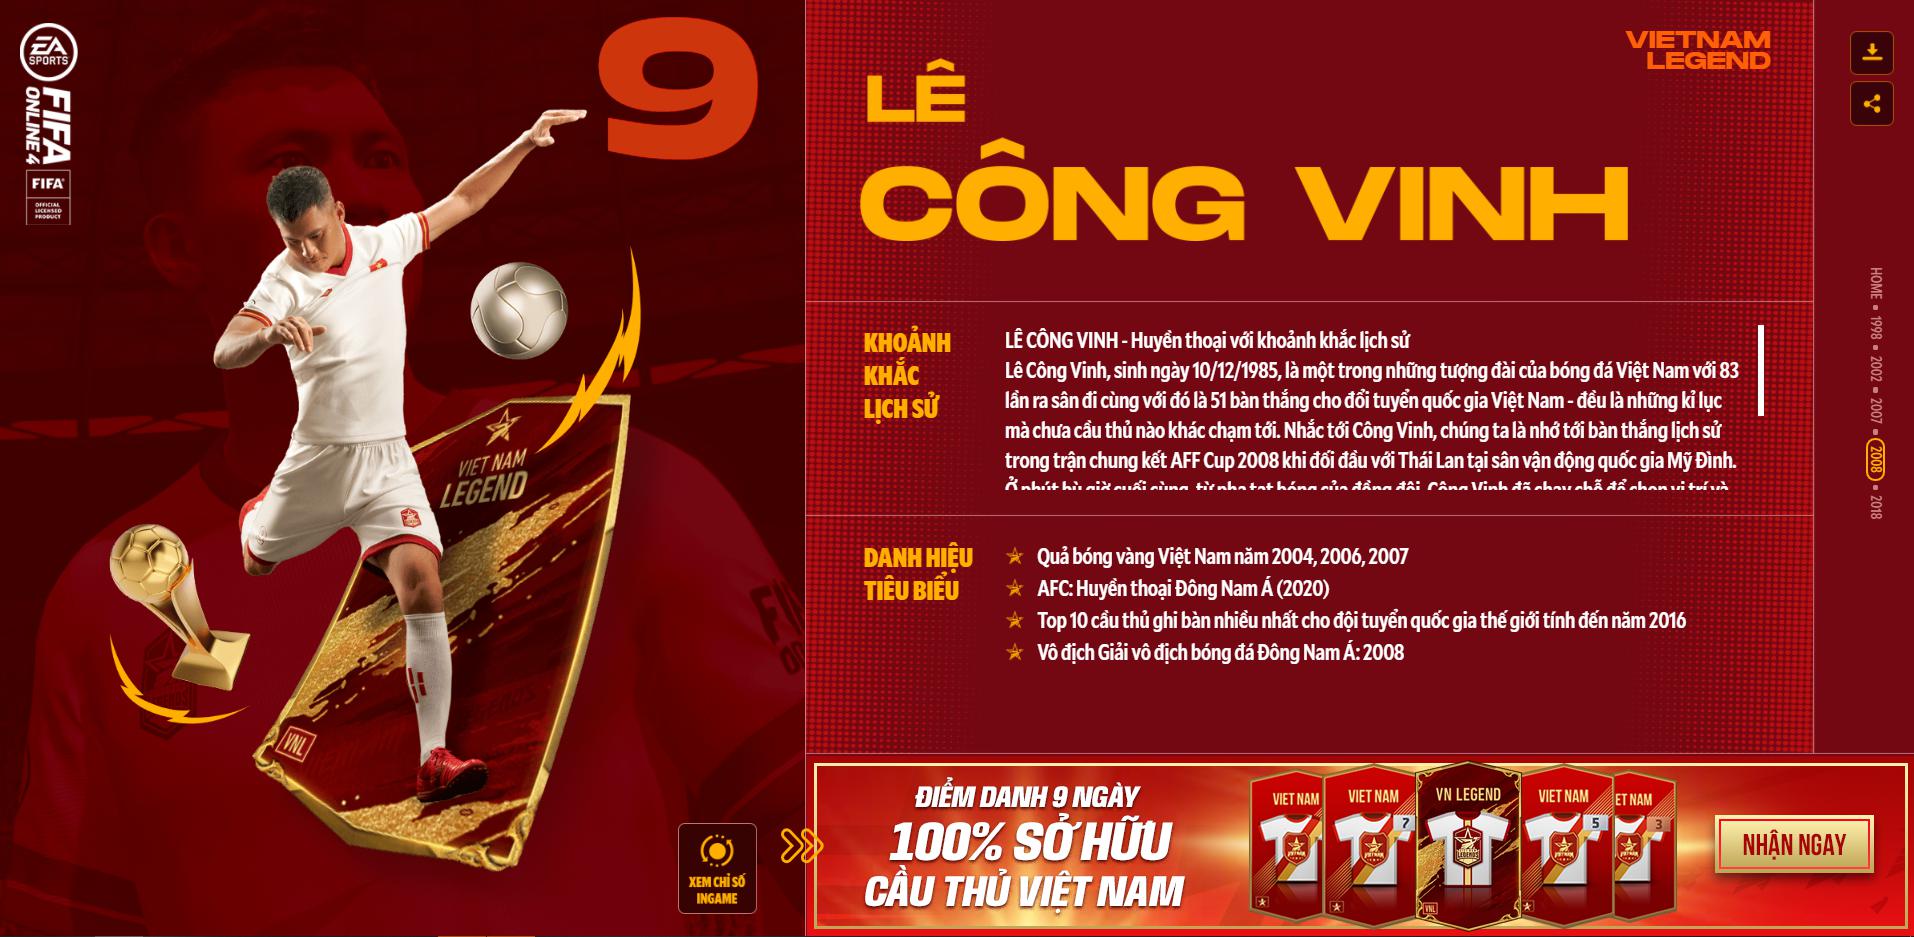 Hồng Sơn và các huyền thoại bóng đá Việt Nam bất ngờ xuất hiện trong FIFA Online 4 - Ảnh 8.